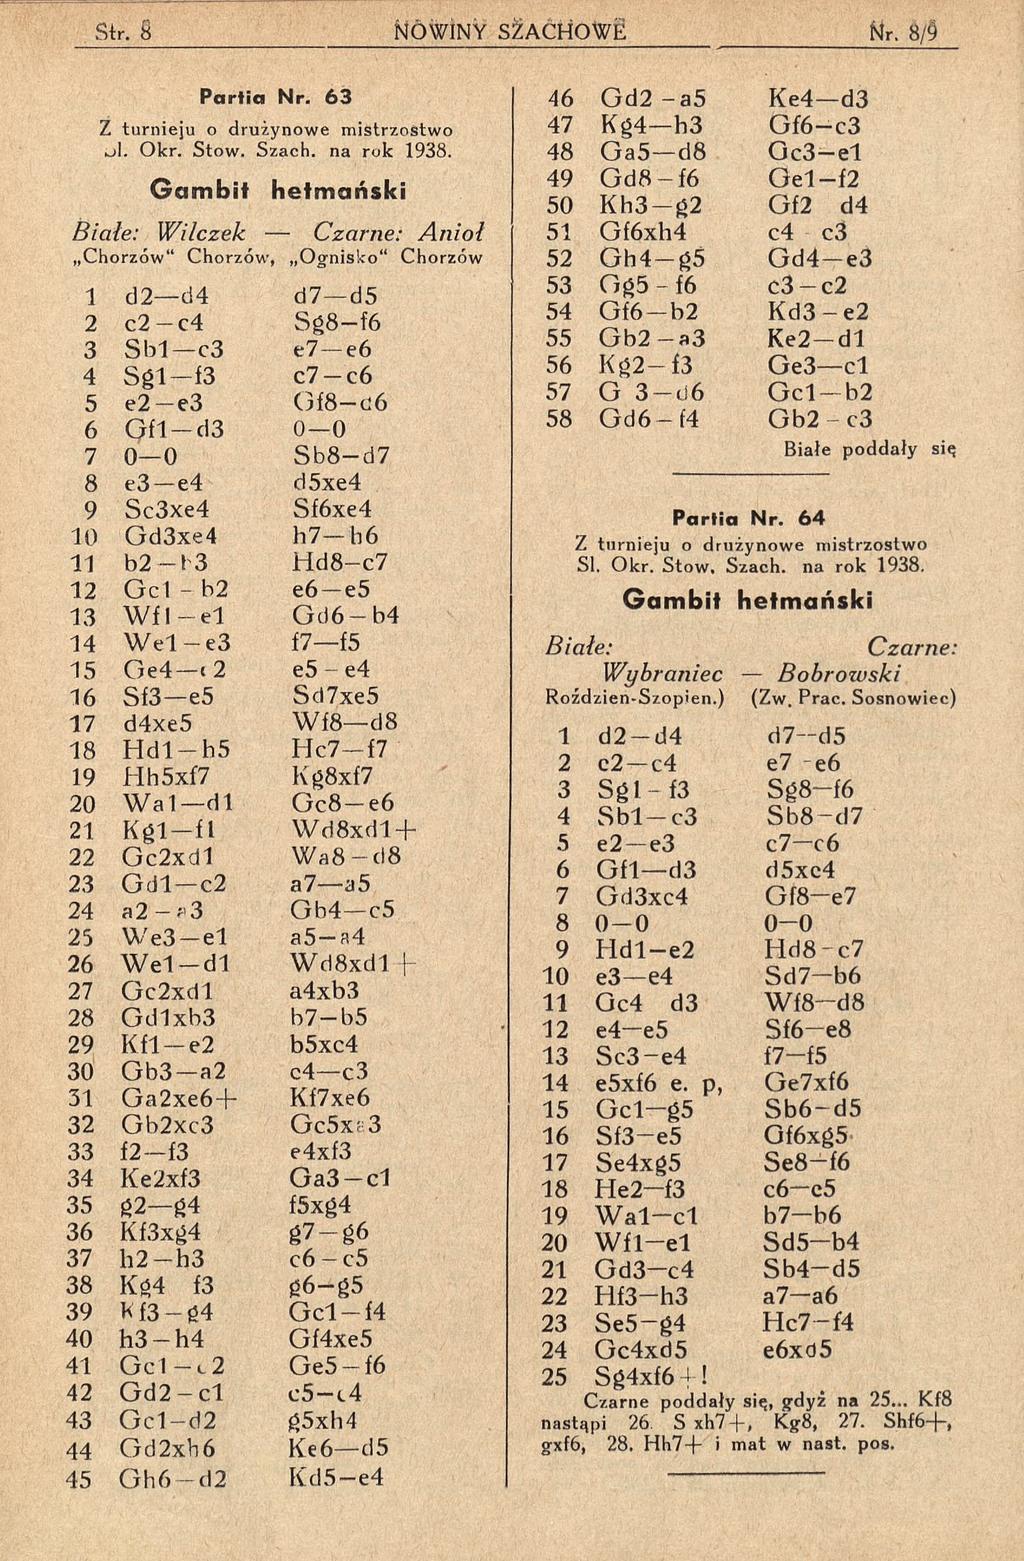 P a r tia N r. 6 3 Z turnieju o drużynowe mistrzostwo lii. Okr. Stow. Szach, na rok 1938.